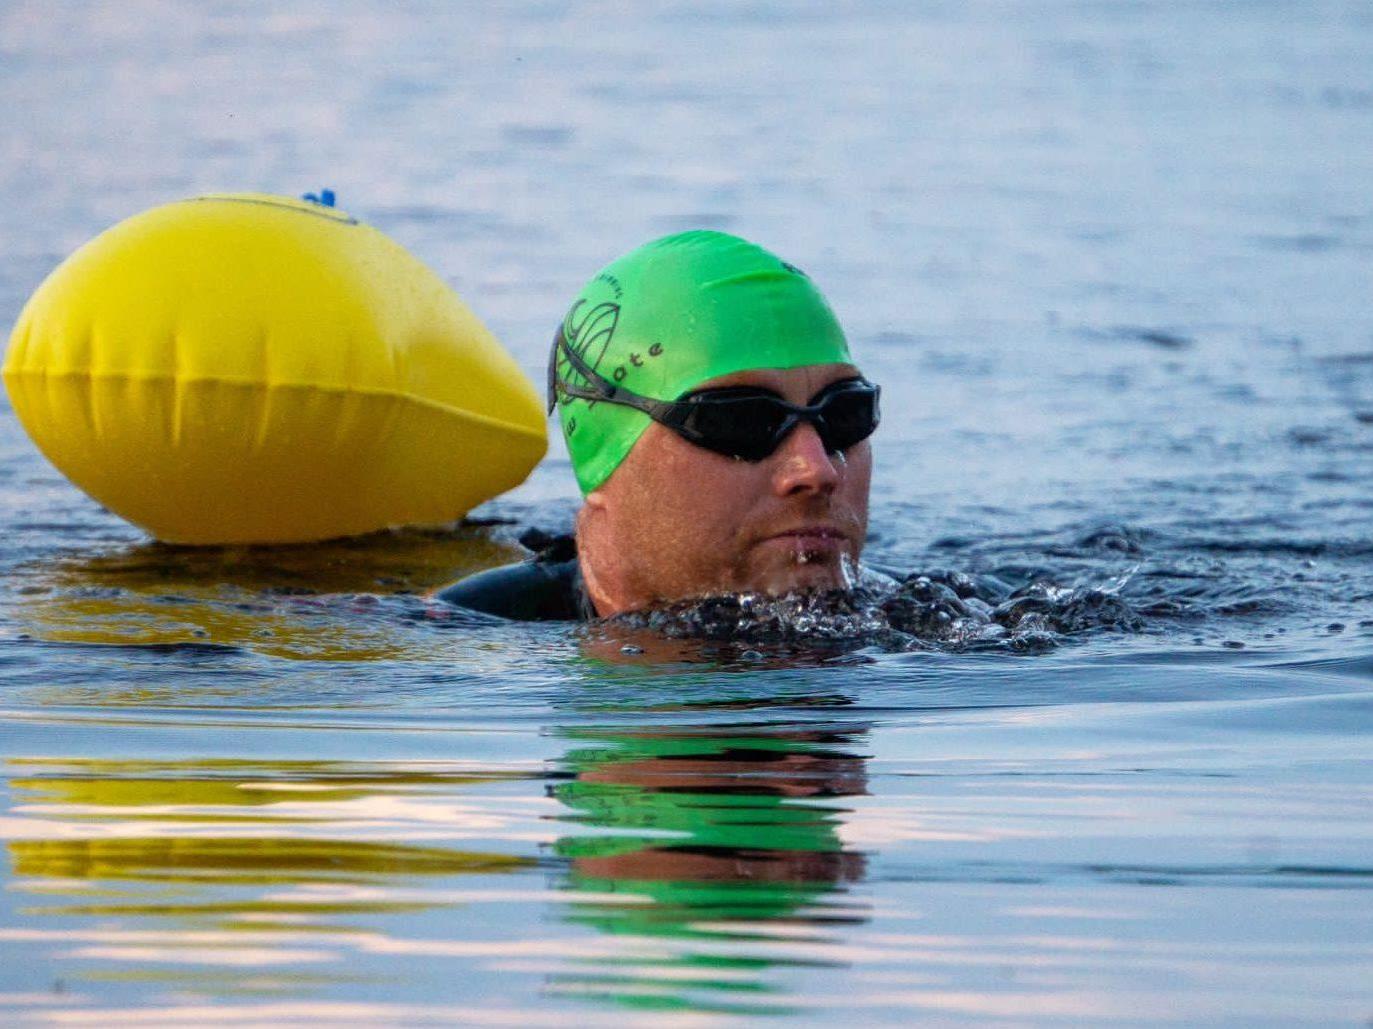 Ireland swimming challenge